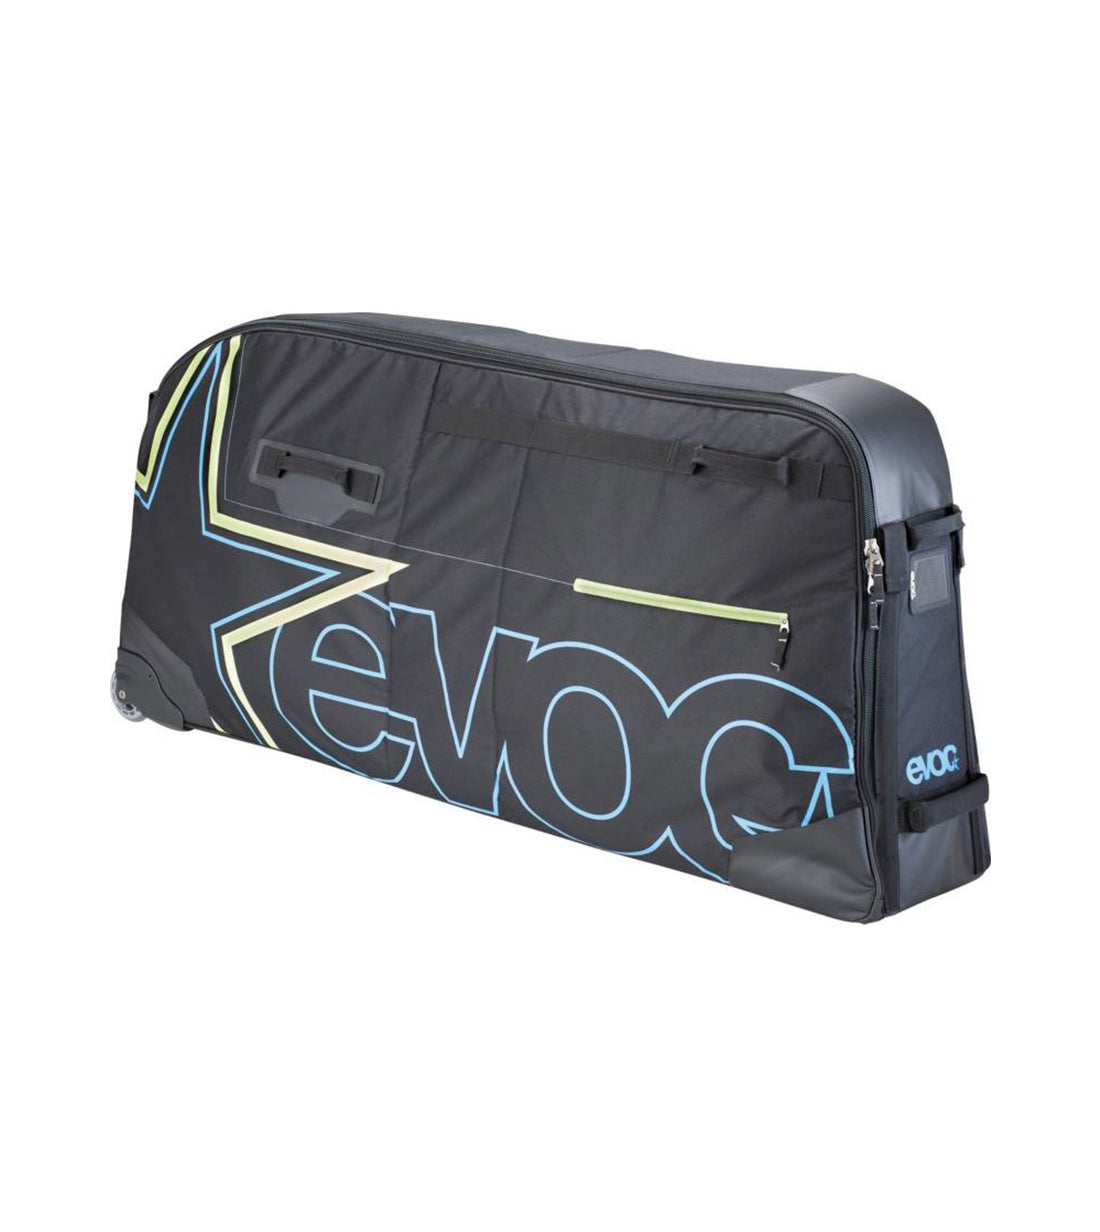 Evoc BMX Travel bag